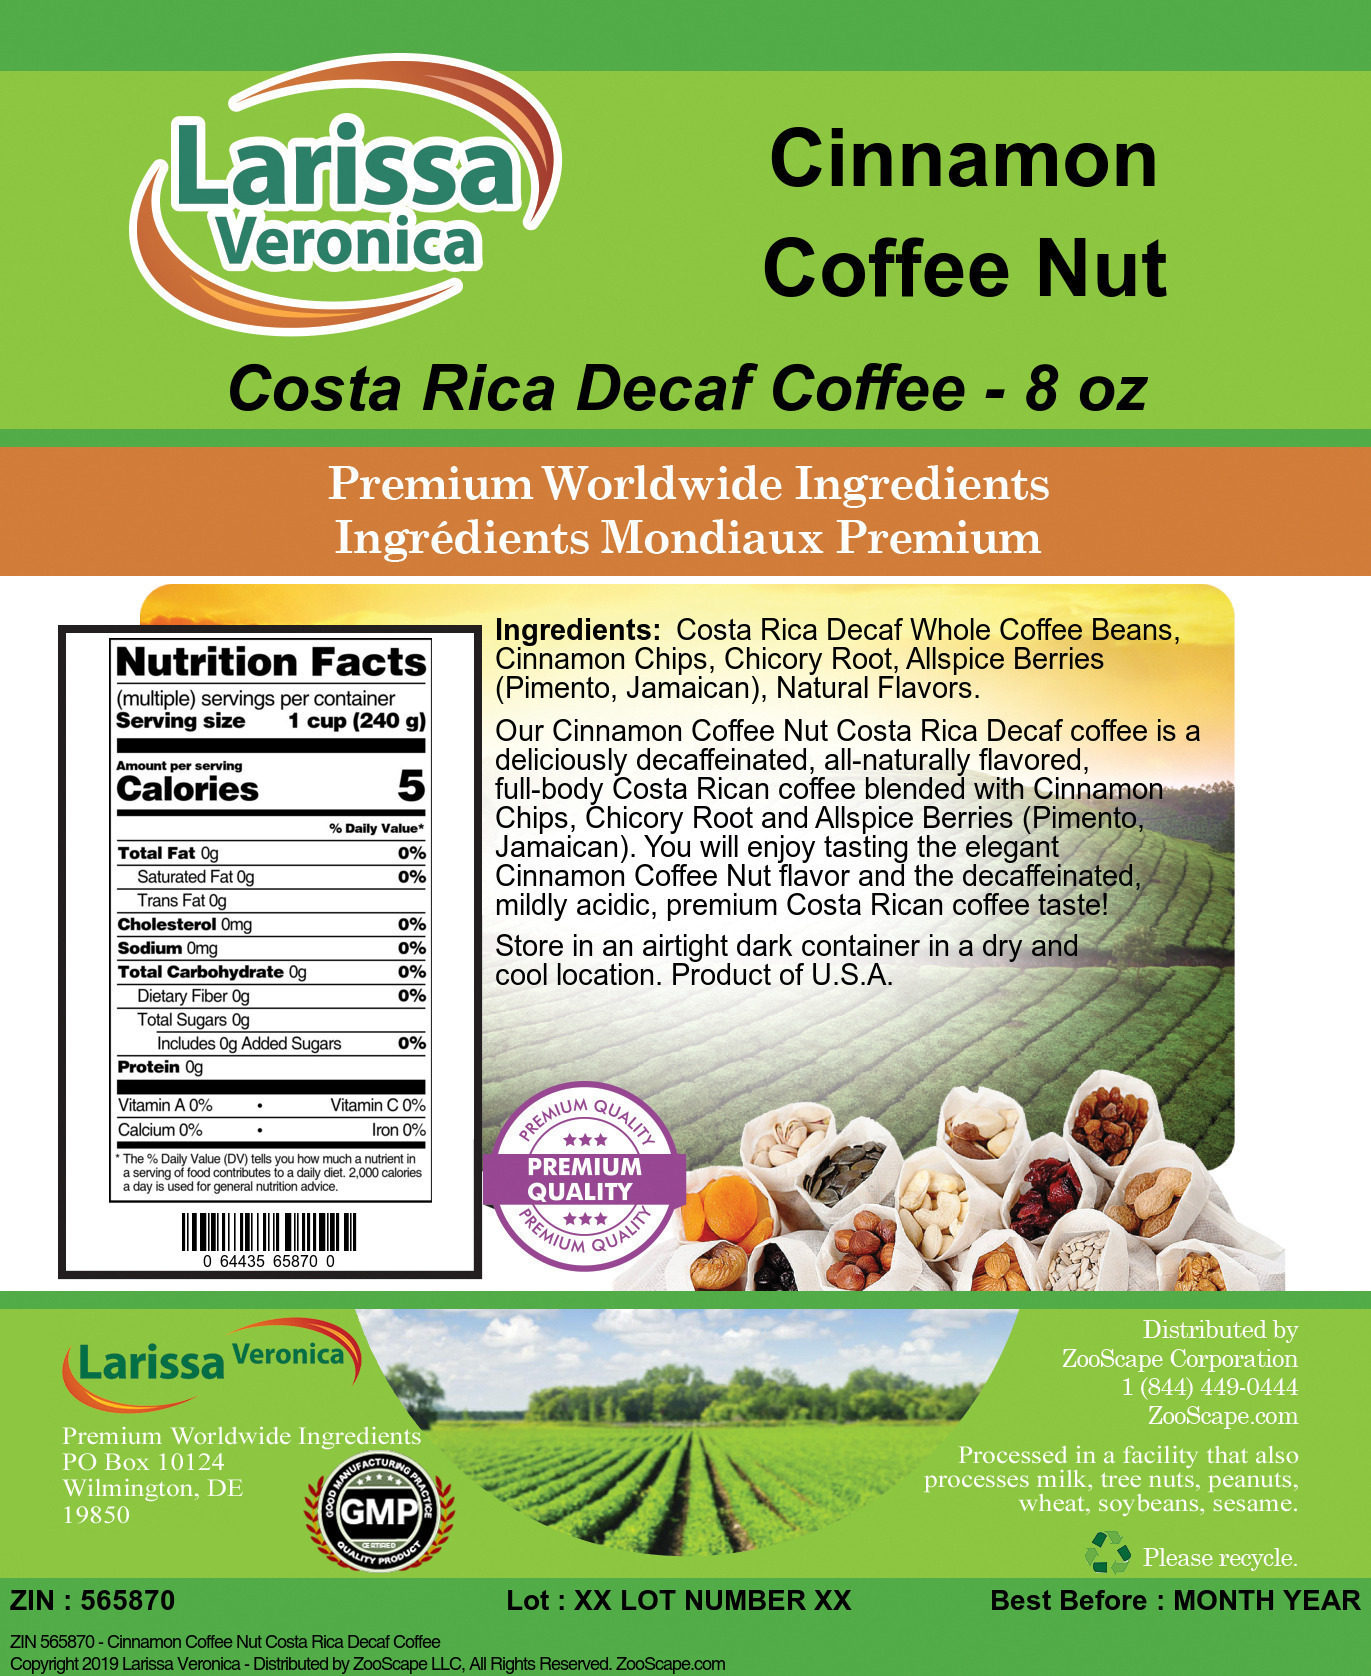 Cinnamon Coffee Nut Costa Rica Decaf Coffee - Label